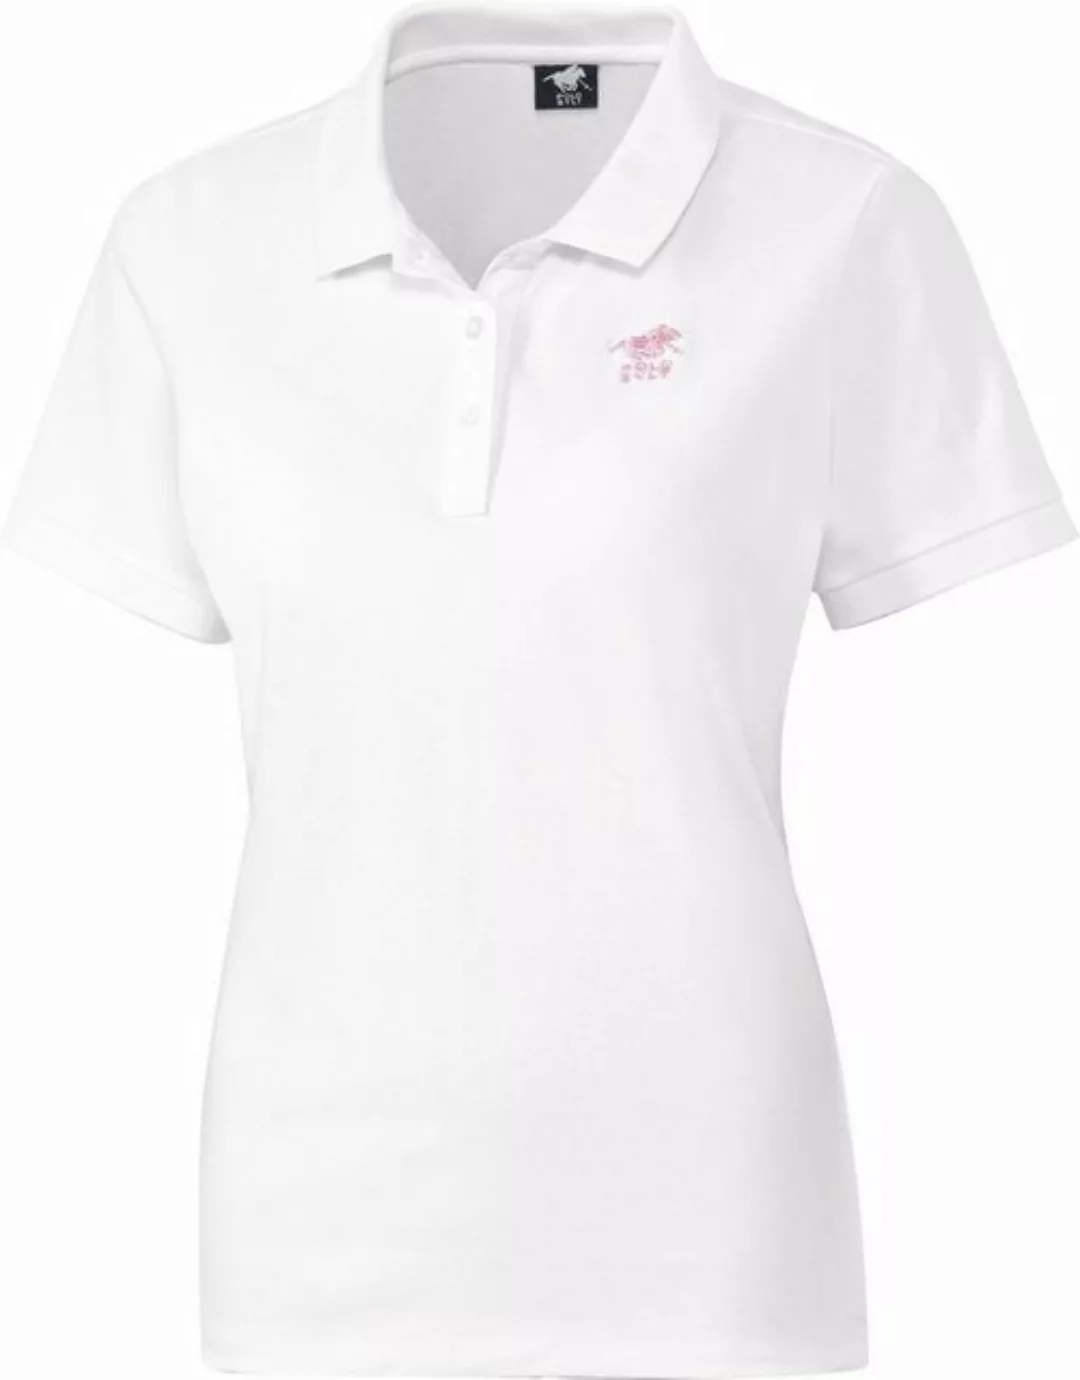 Polo Sylt Poloshirt aus weichem, anschmiegsamem und pflegeleichtem Stretch- günstig online kaufen